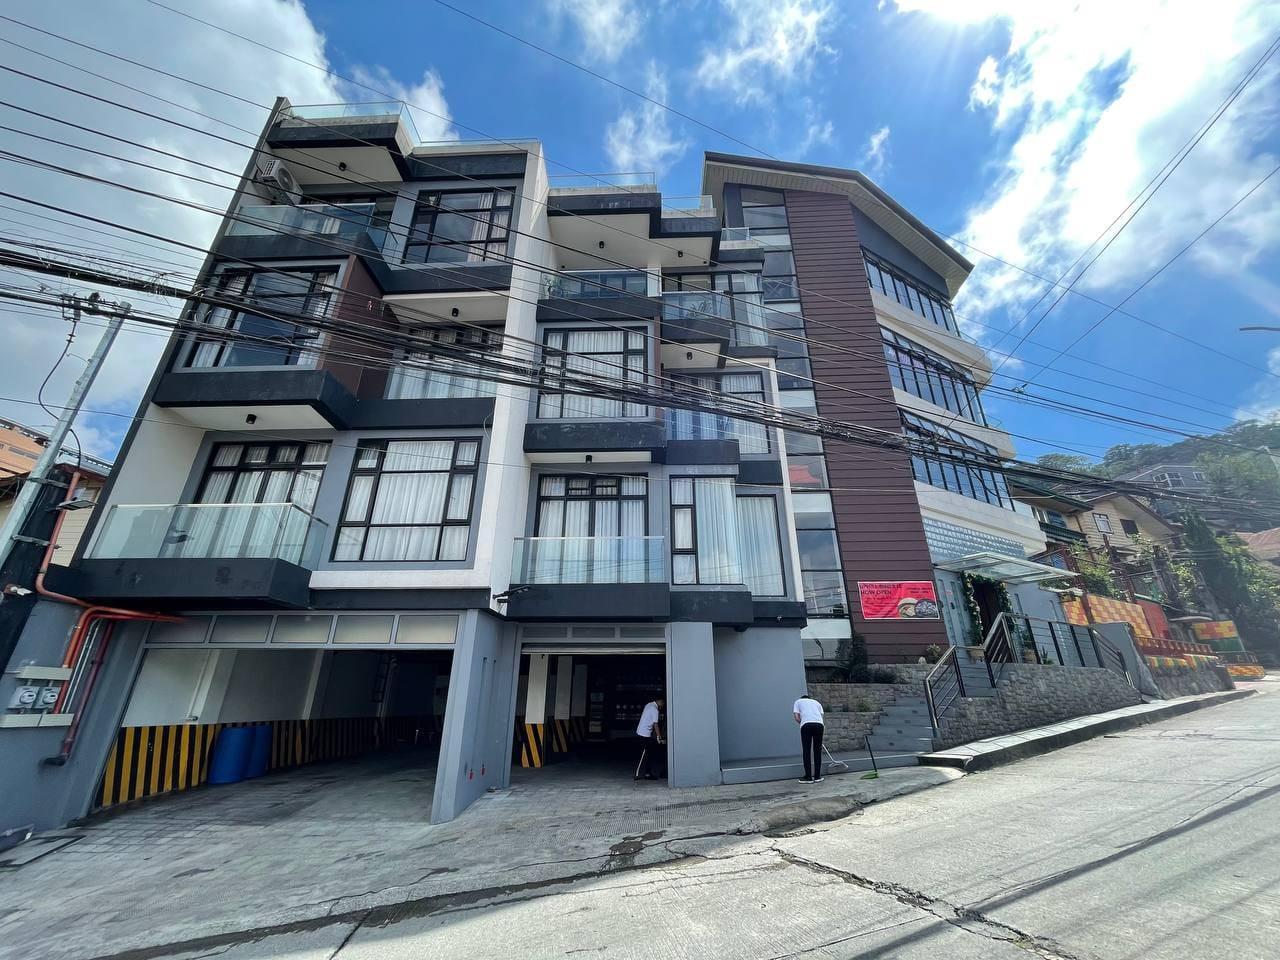 Uphill Hotel - Baguio - La Unión